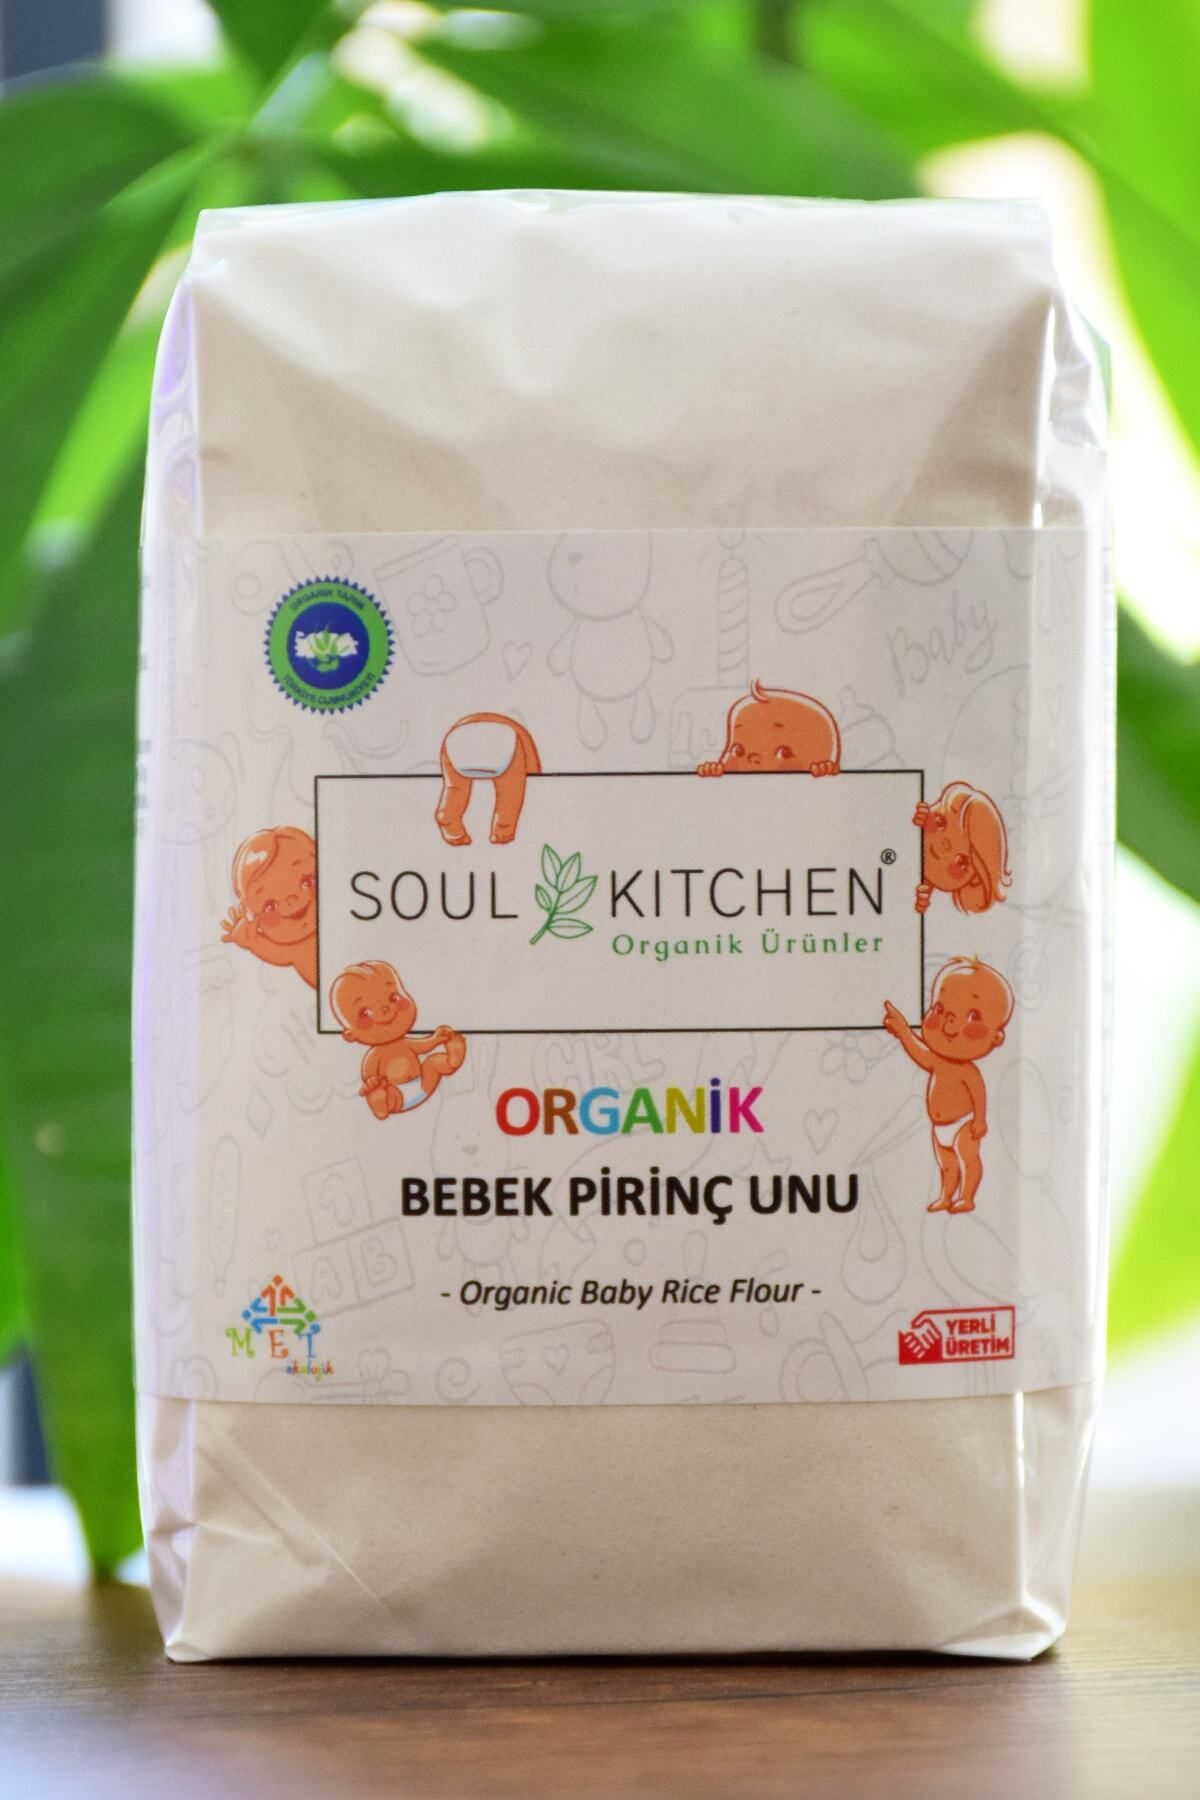 Soul Kitchen Organik Ürünler Organik Bebek Pirinç Unu 250gr